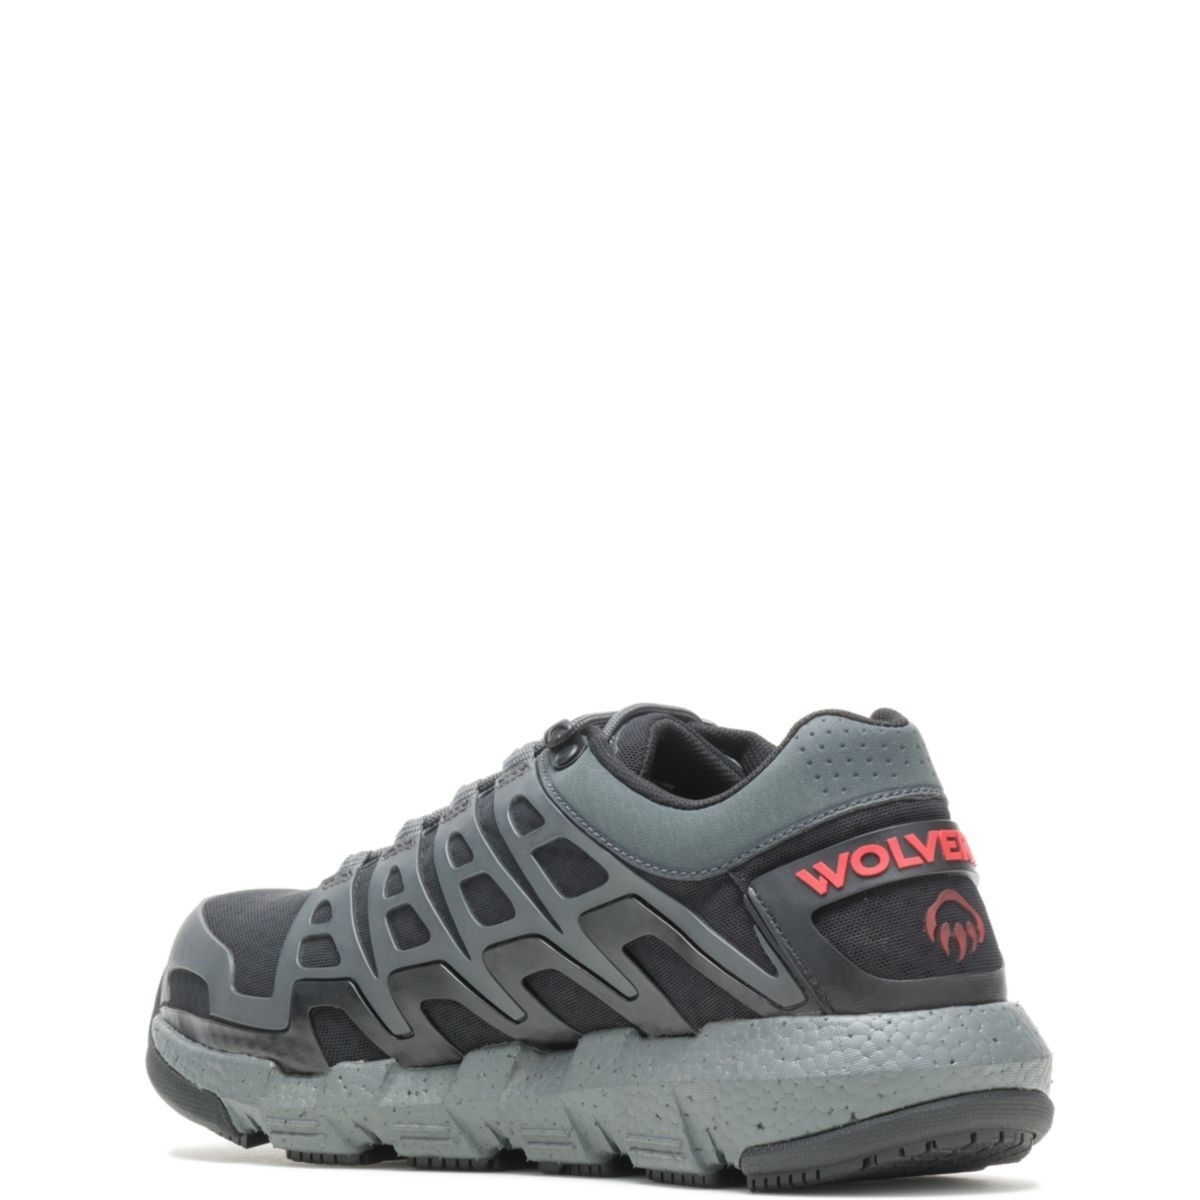 WOLVERINE Men's Rev Vent UltraSpringâ¢ DuraShocksÂ® CarbonMAXÂ® Composite Toe Work Shoe Charcoal - W211016 CHARCOAL - CHARCOAL, 7.5